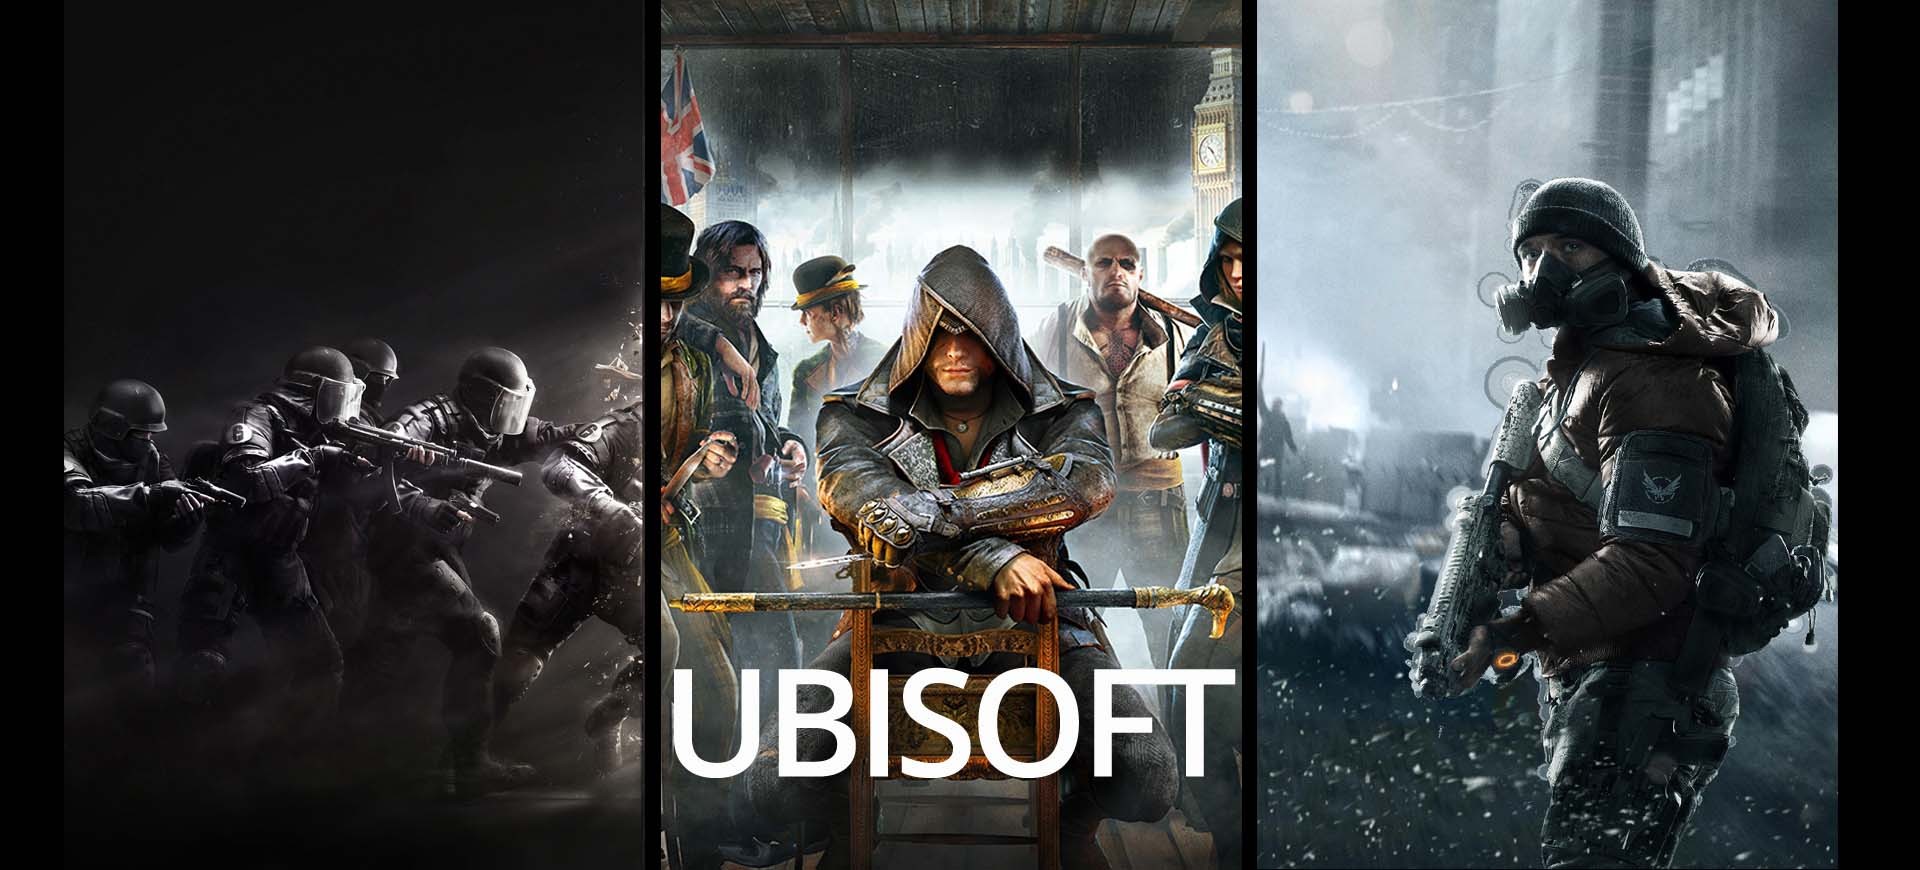 E3 2015: Ubisoft – “Đội hình” cũ những hứa hẹn nhiều bất ngờ